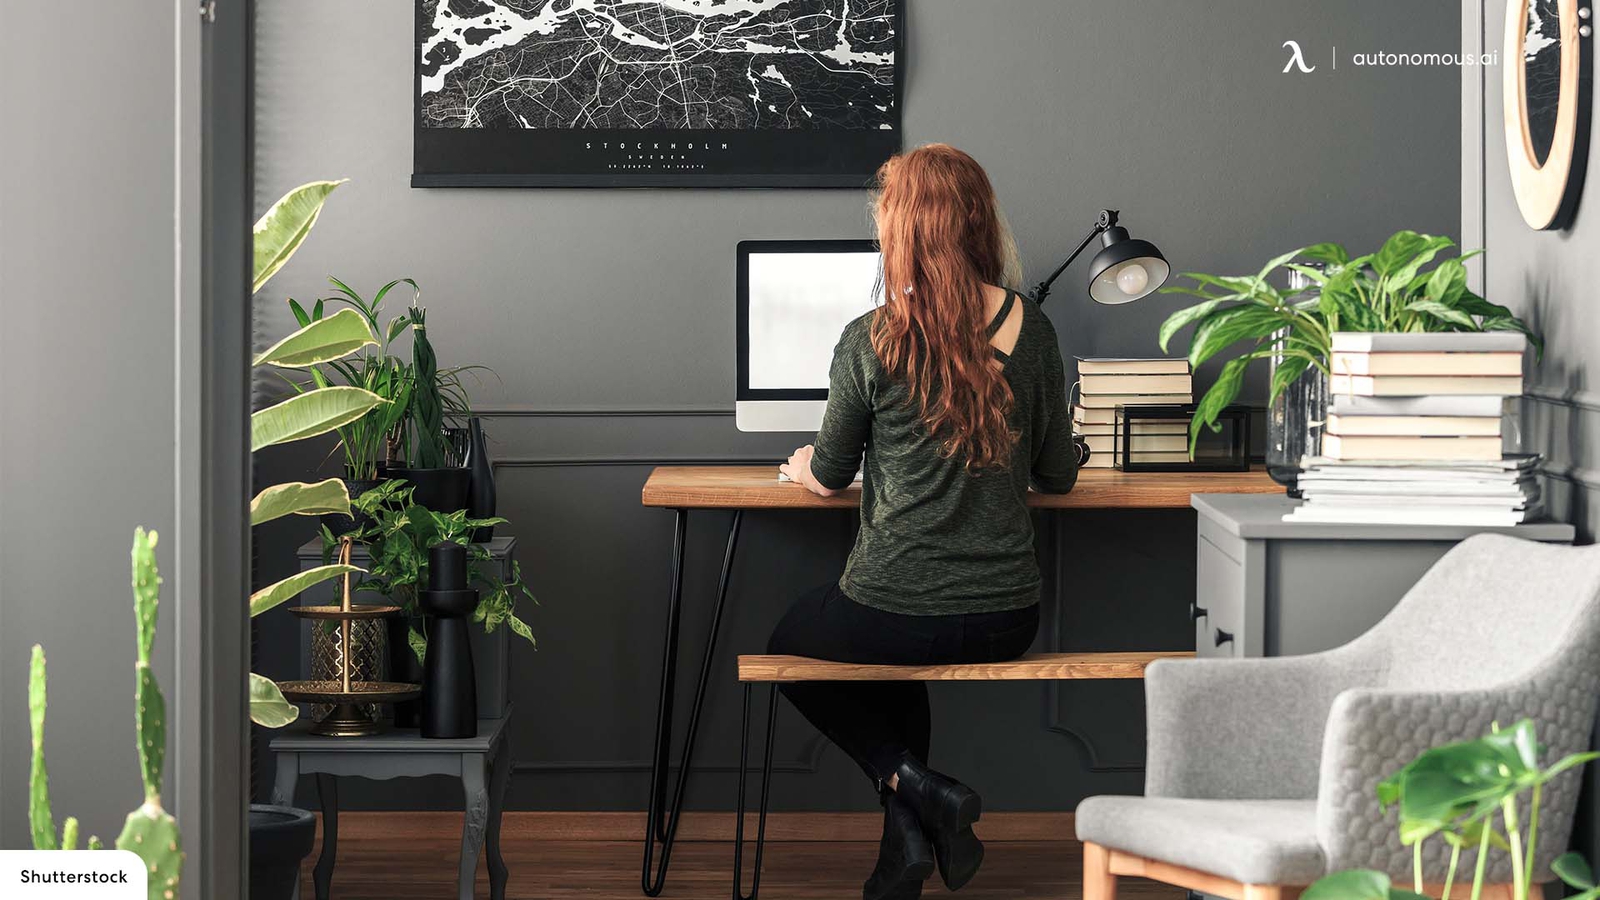 6 Most Modern Corner Desks in 2023